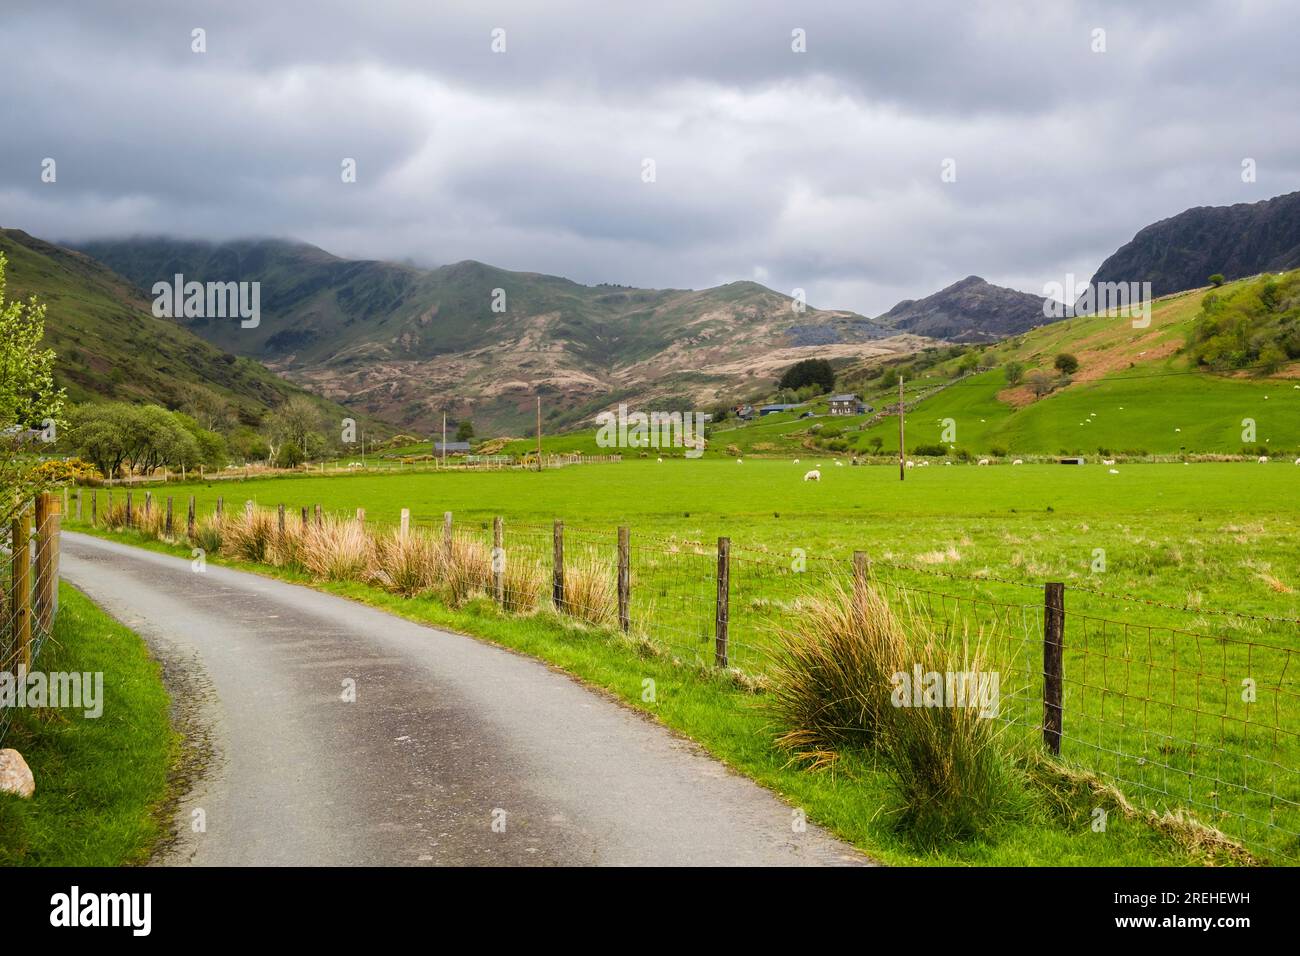 Ammira la stretta stradina di campagna fino alla Cwm Pennant Valley nel parco nazionale di Snowdonia. Llanfihangel-y-pennant, Porthmadog, Gwynedd, Galles del Nord, Regno Unito, La Gran Bretagna Foto Stock